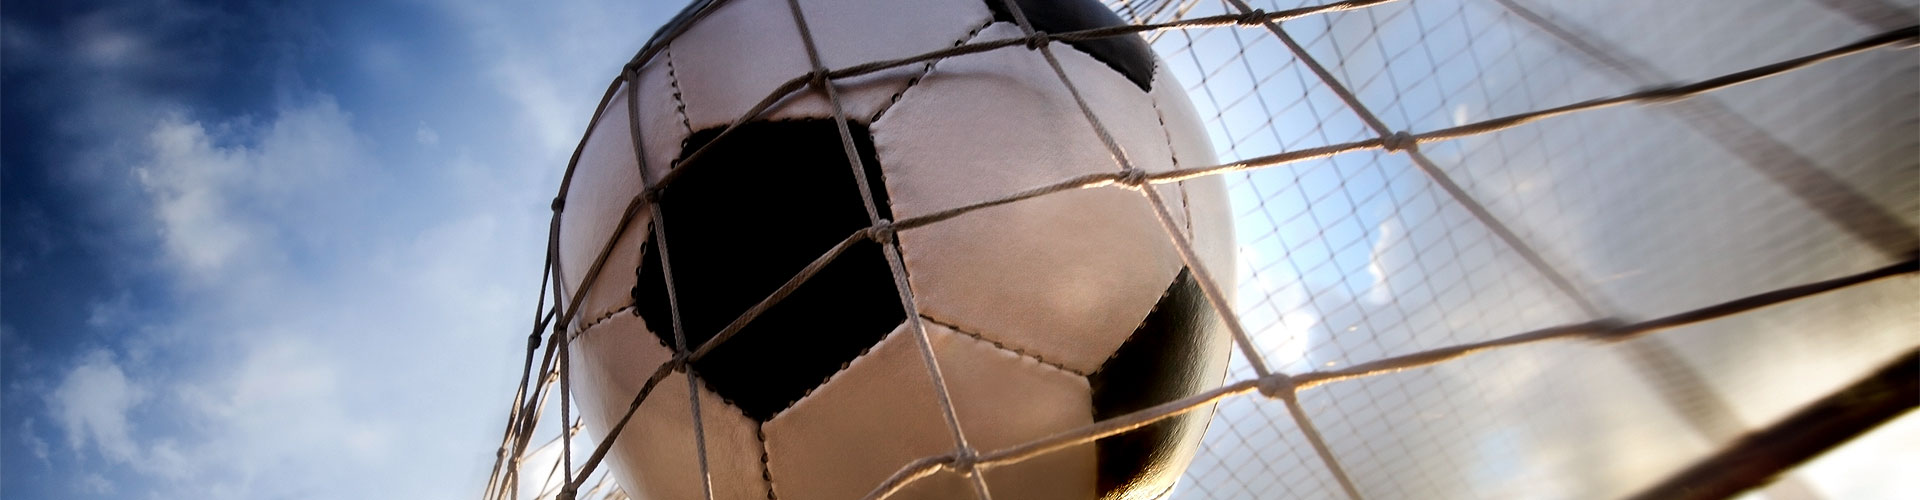 Ver la Eurocopa 2020 de fútbol en vivo en Utebo